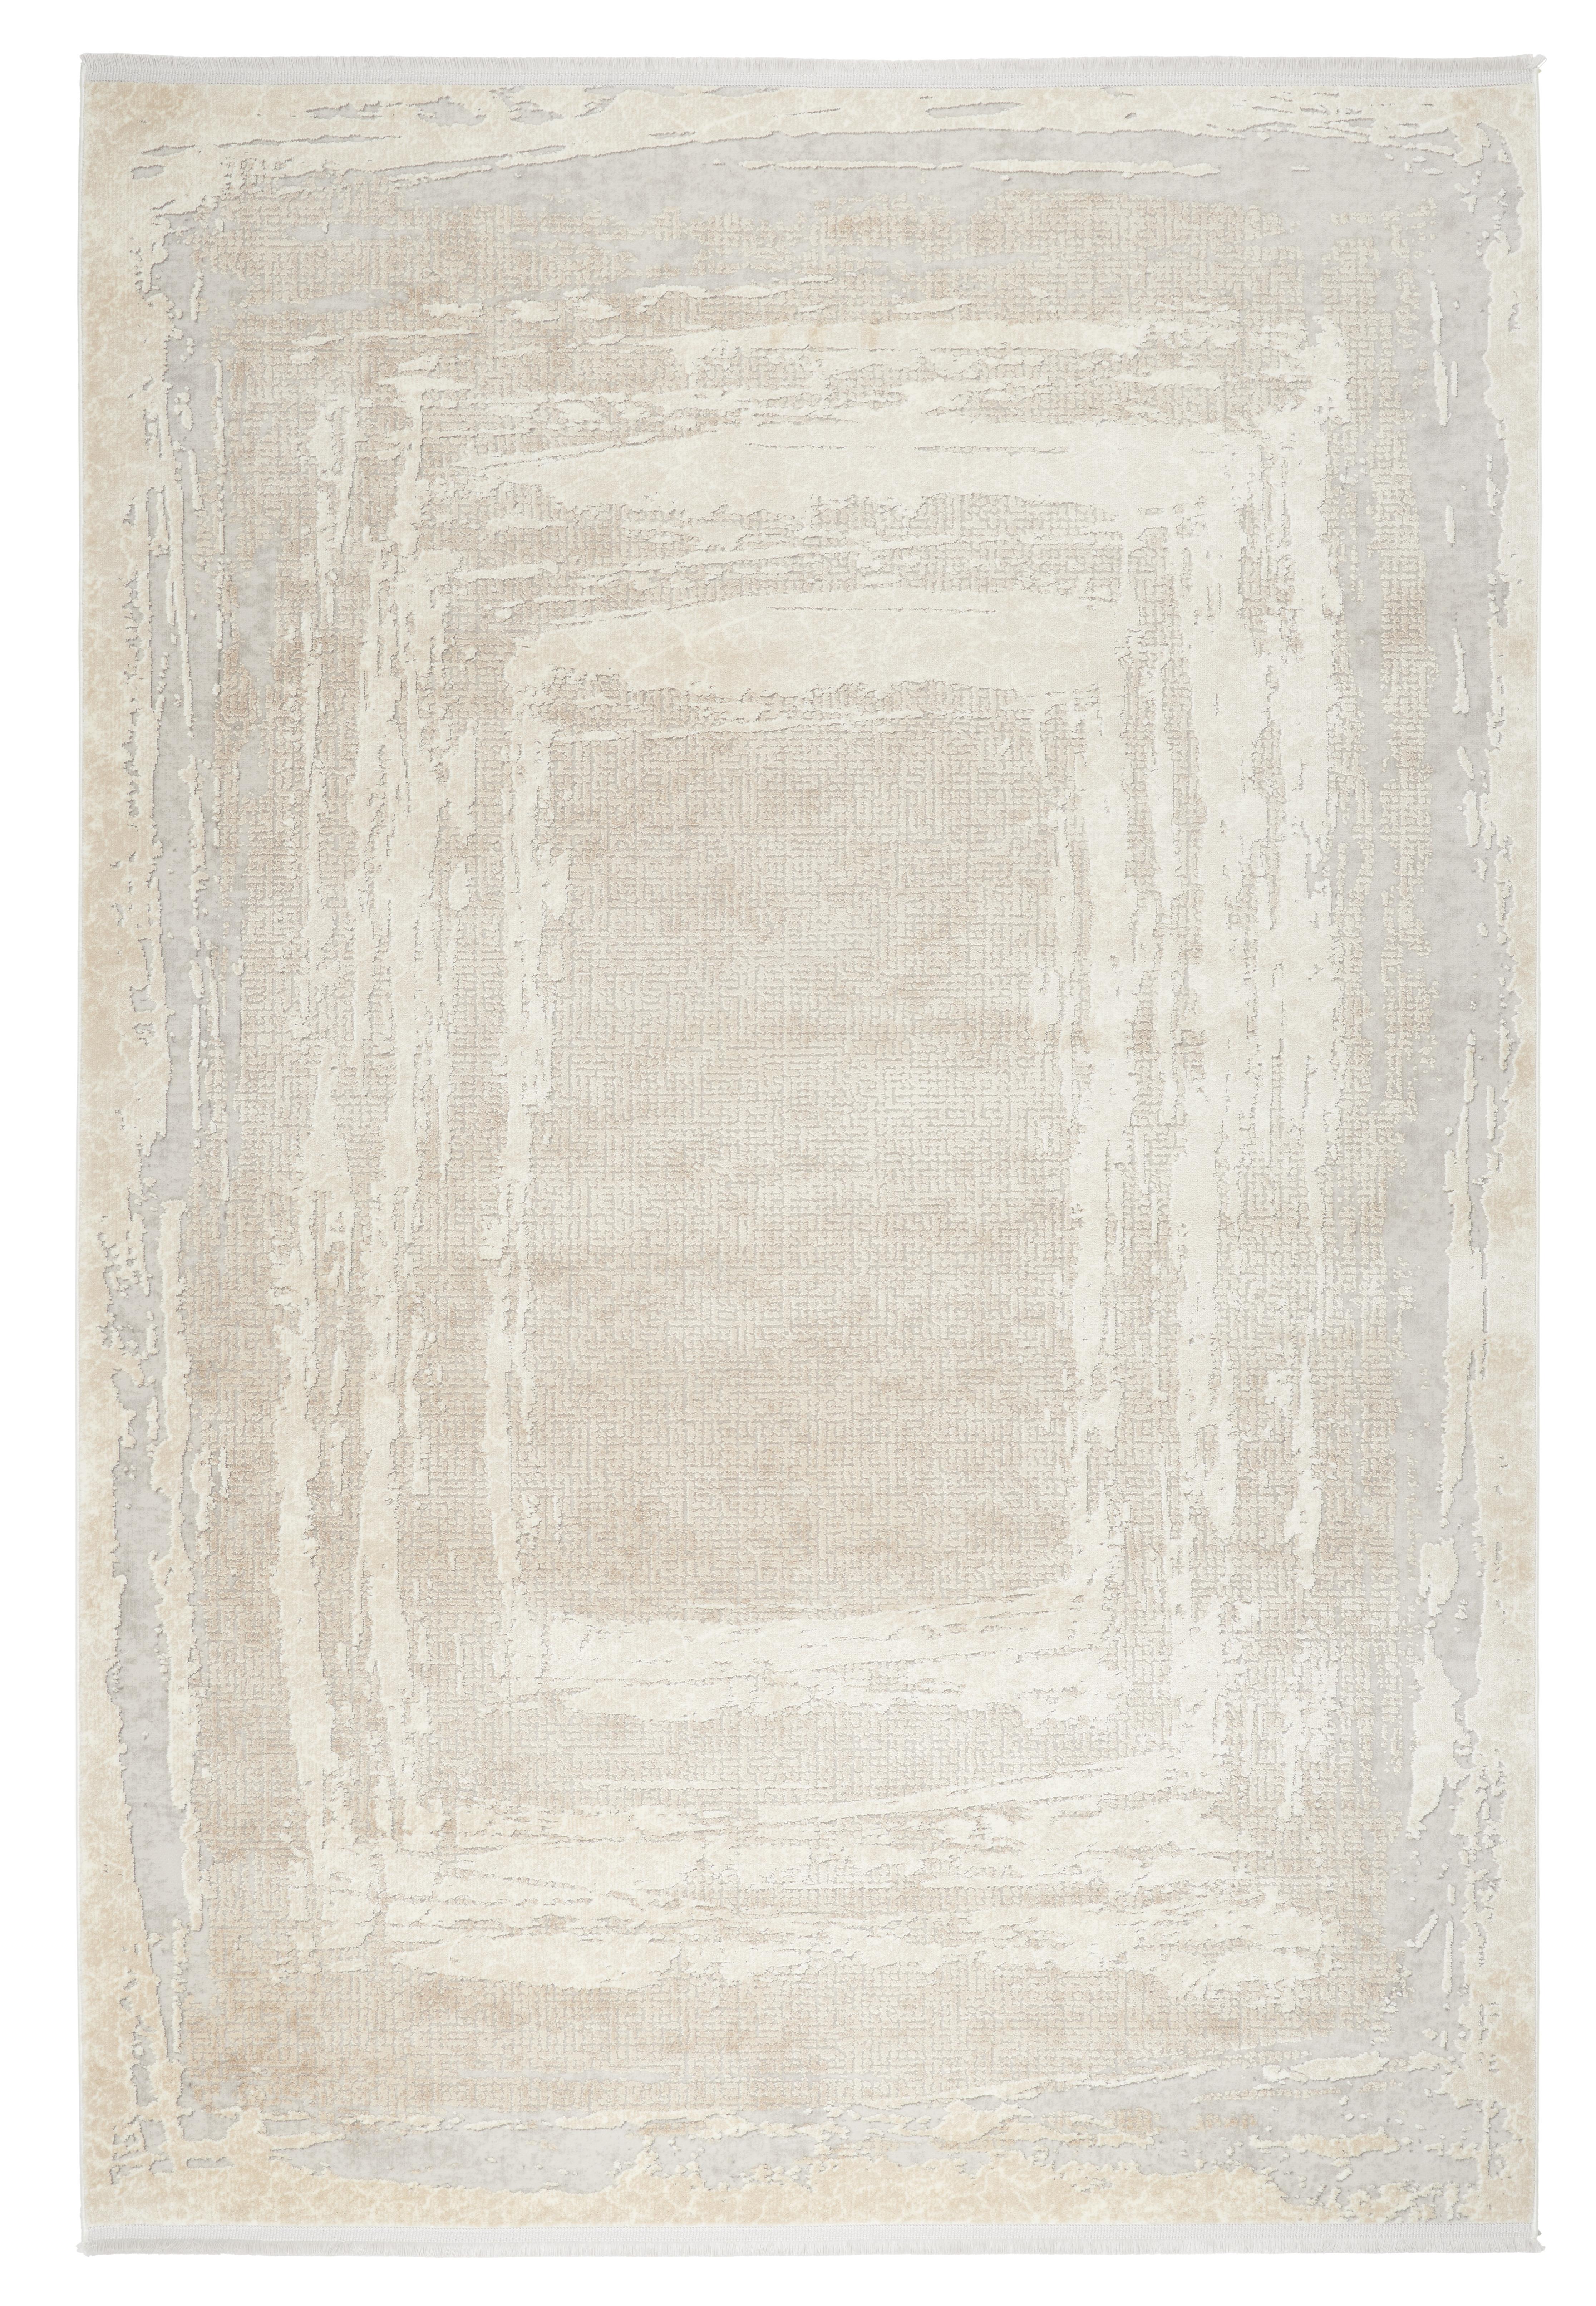 Handwebteppich Bernado 1 in Beige ca. 120x170cm - Beige, Romantik / Landhaus, Textil (120/170cm) - Premium Living